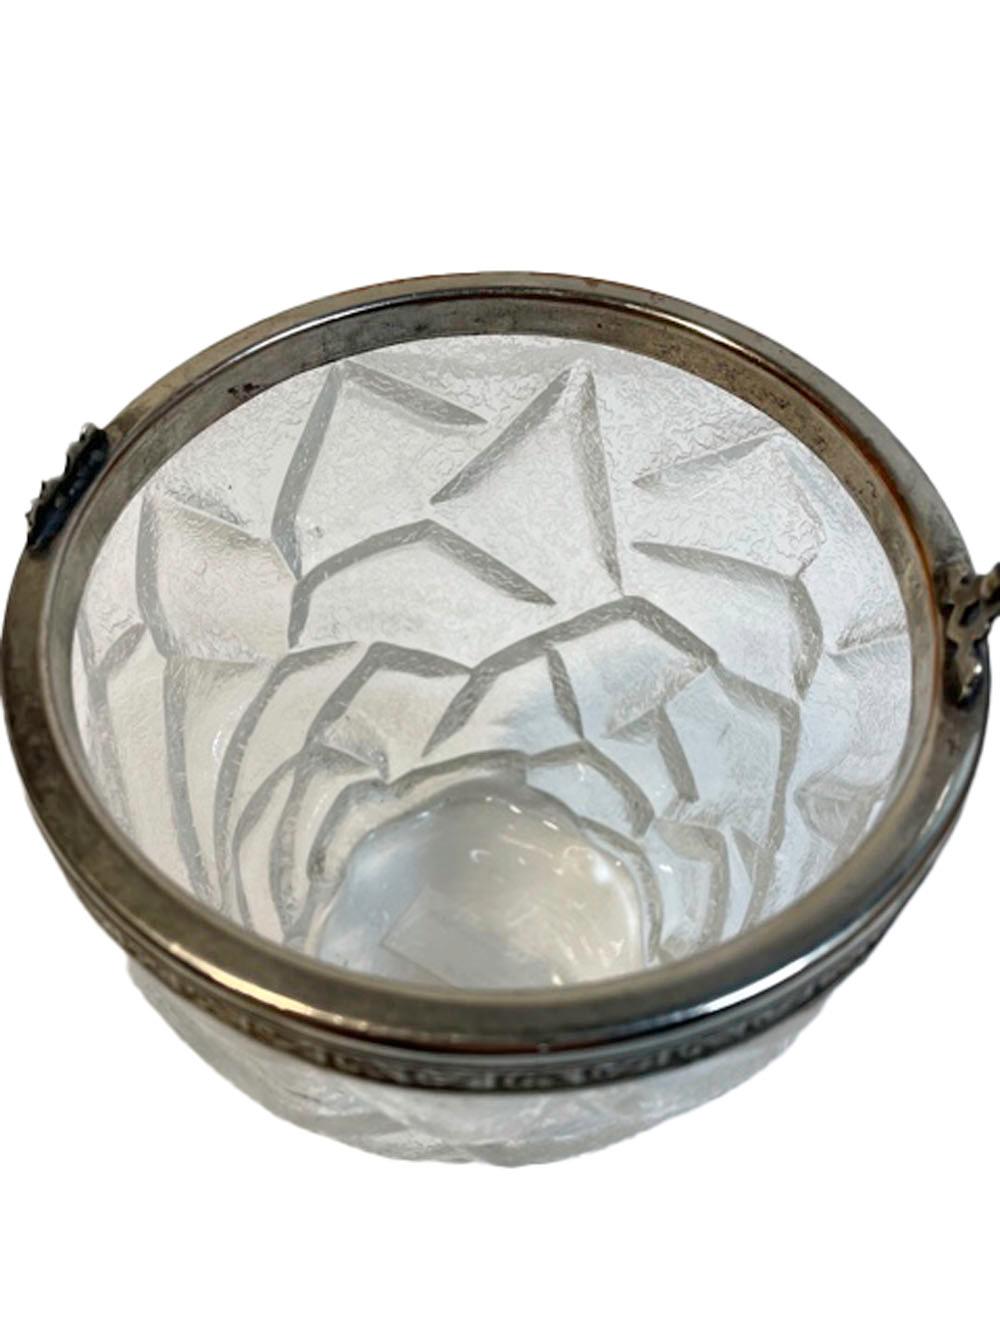 Eiskübel aus Pressglas in Eimerform mit einer mattierten Oberfläche, die an gebrochenes Eis erinnert. Der silberne Tellerrand mit blattförmigem Rand und angebrachtem Bügelgriff.